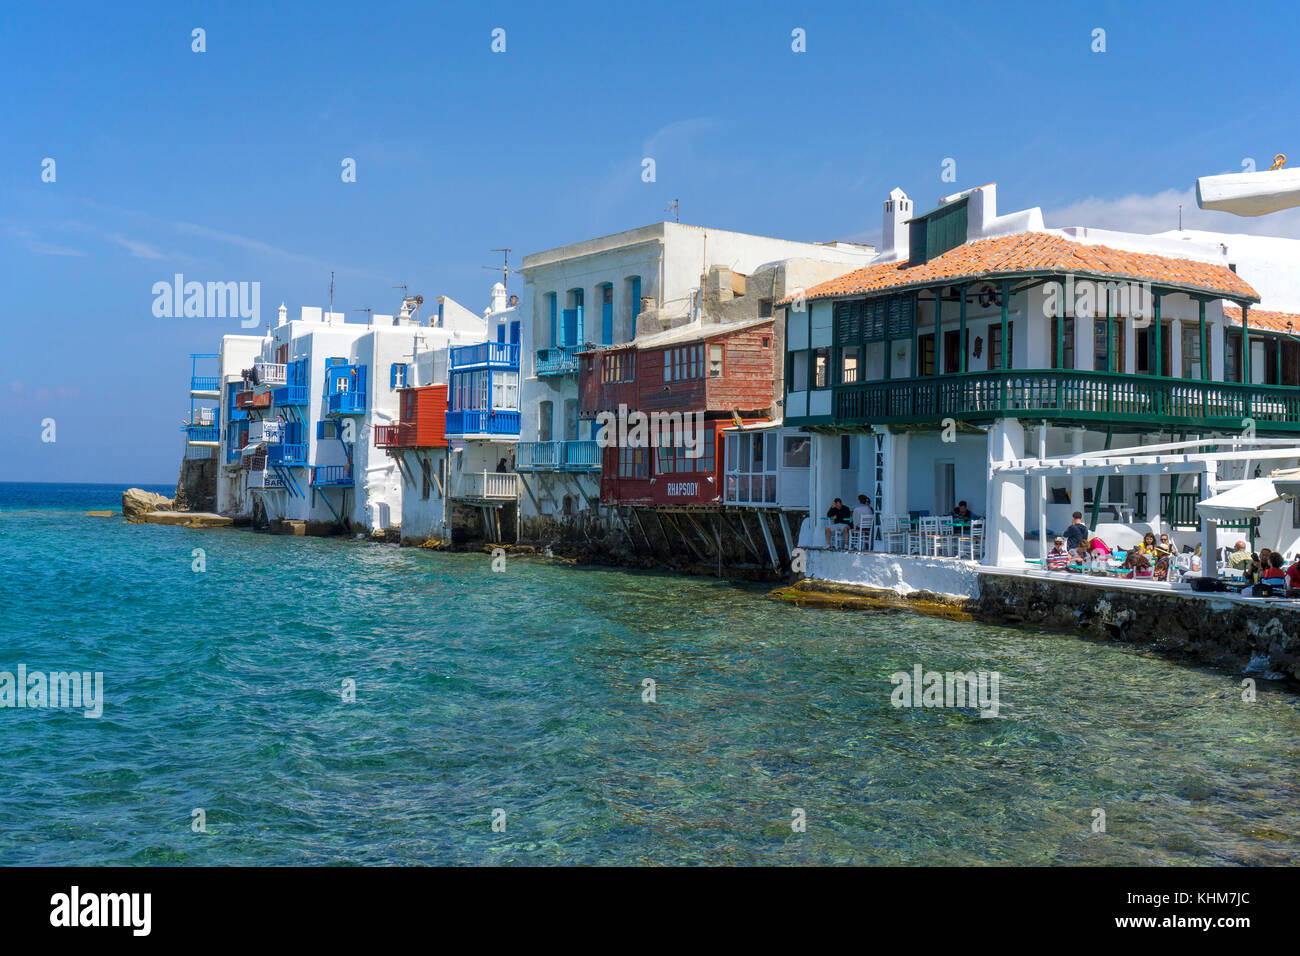 La petite Venise, destination touristique populaire du mykonos-ville, l'île de Mykonos, Cyclades, Mer Égée, Grèce Banque D'Images